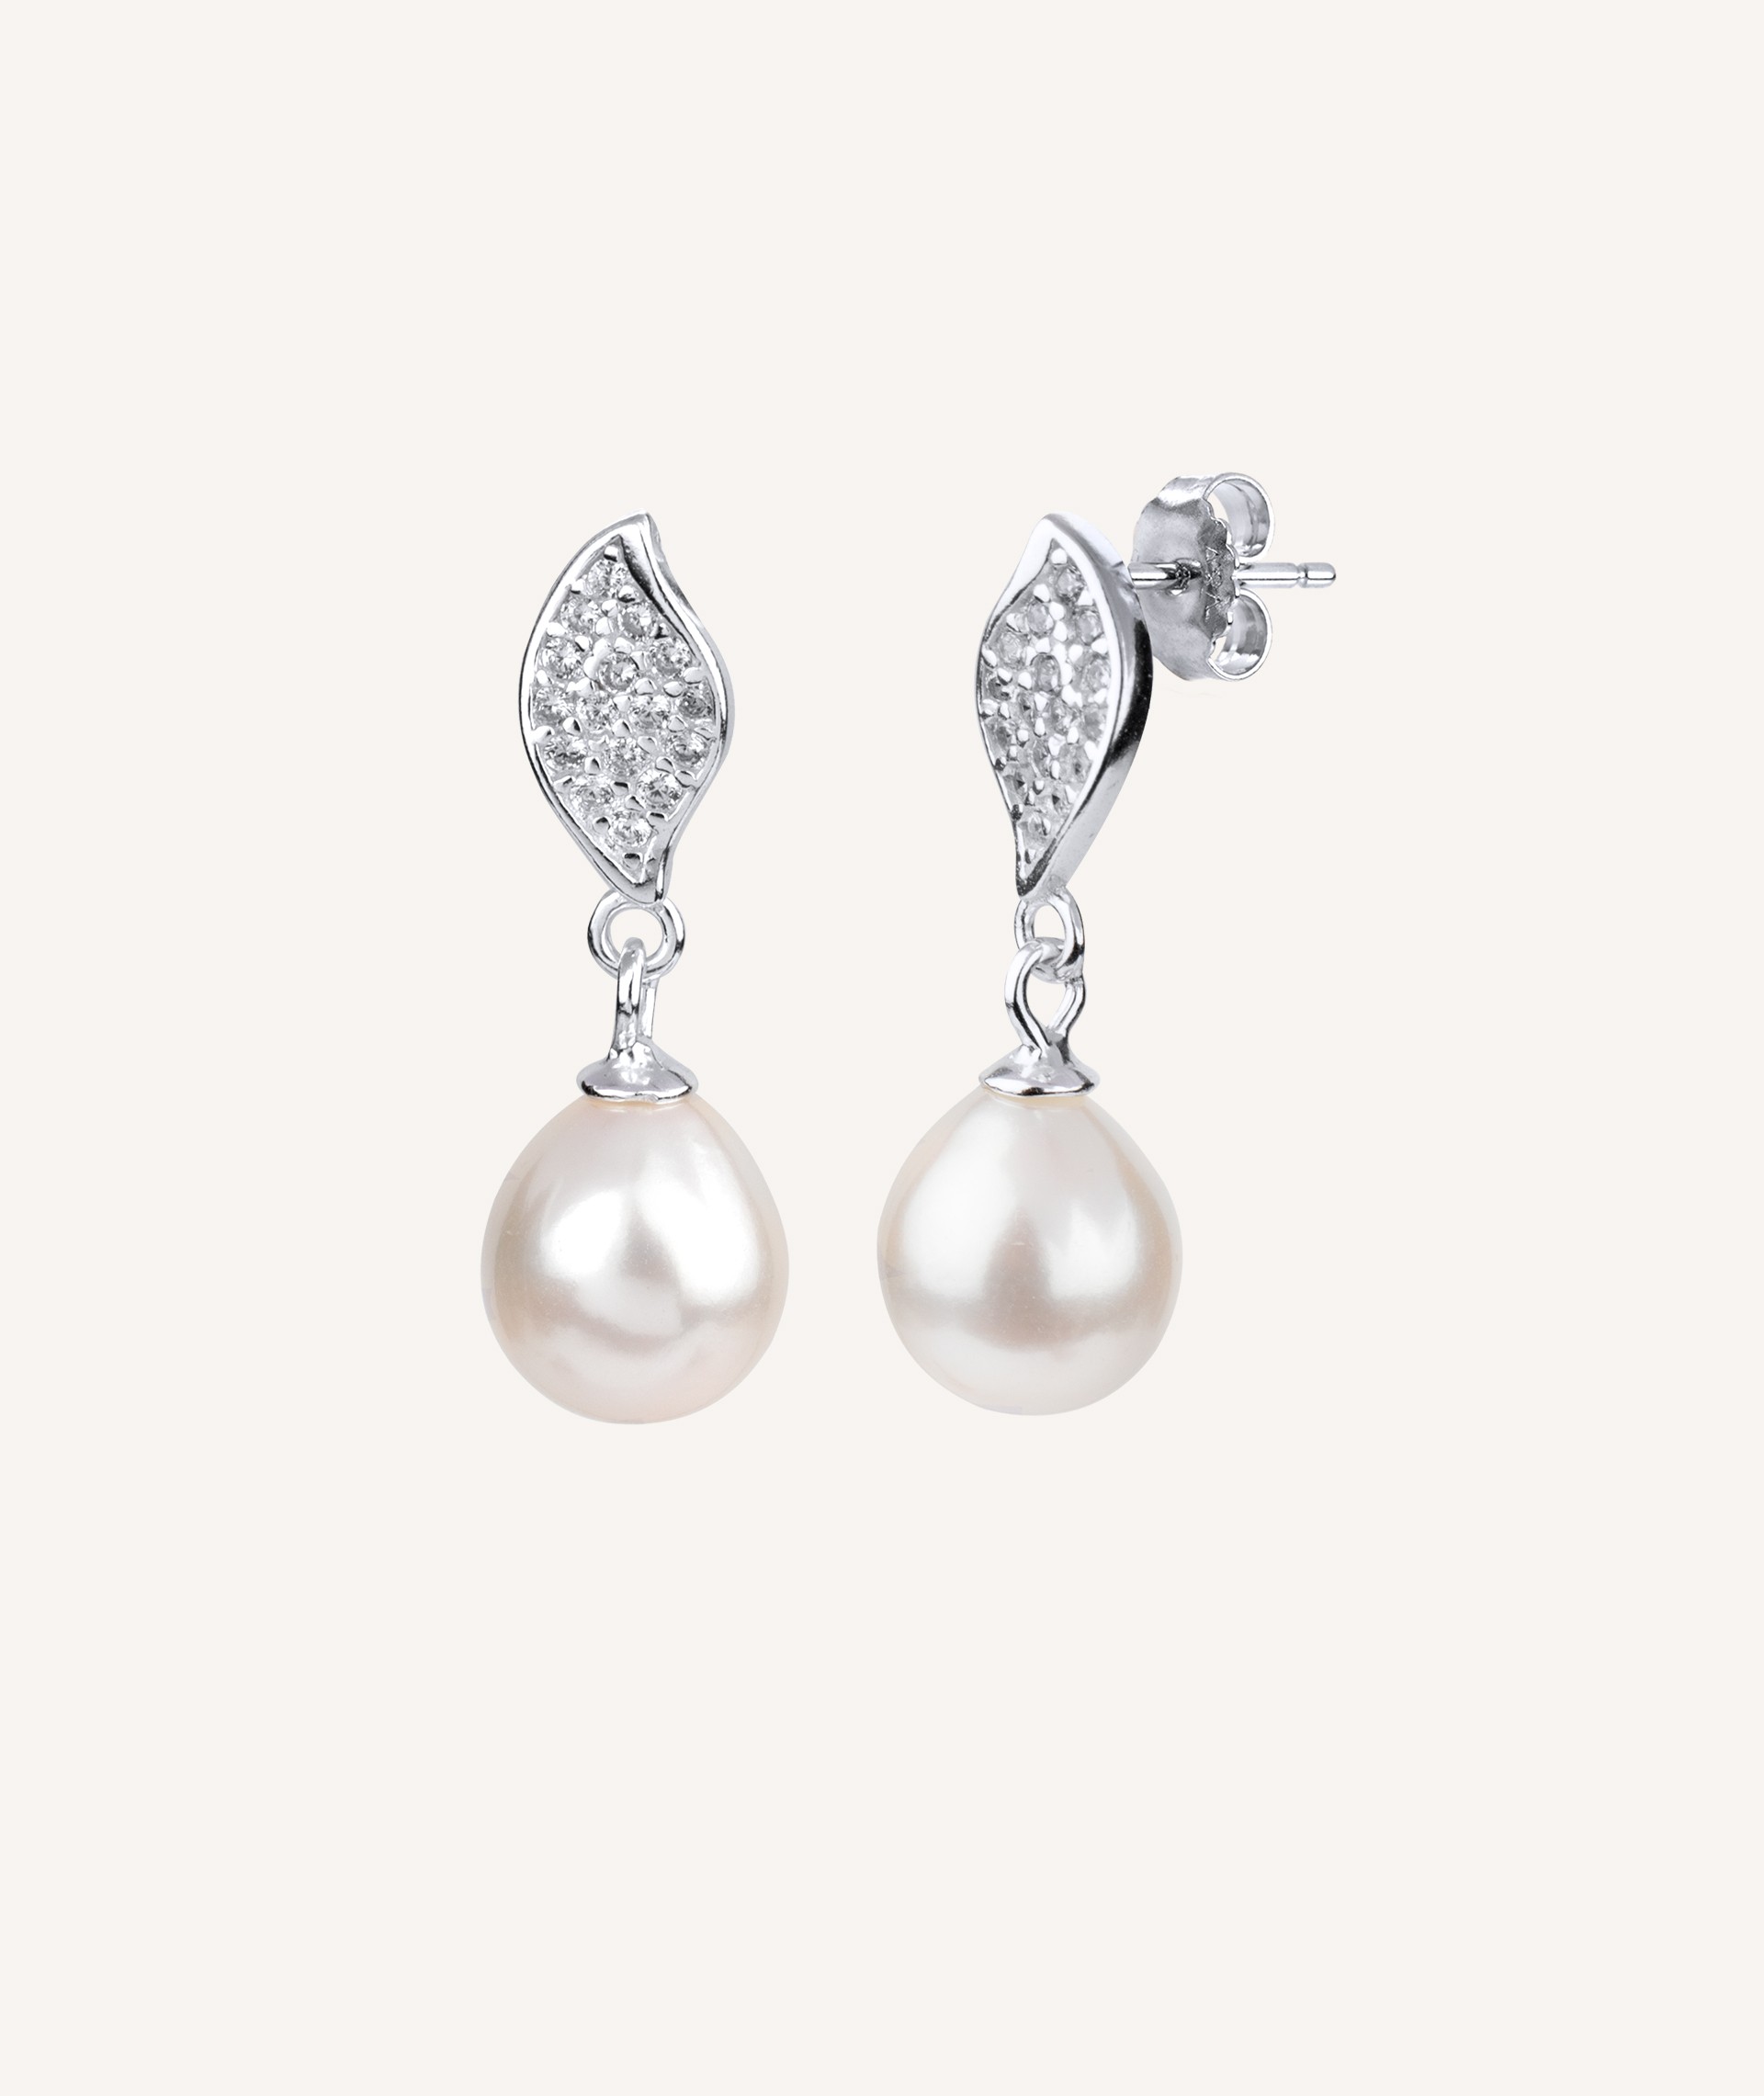 Earrings Pearl Zirconias